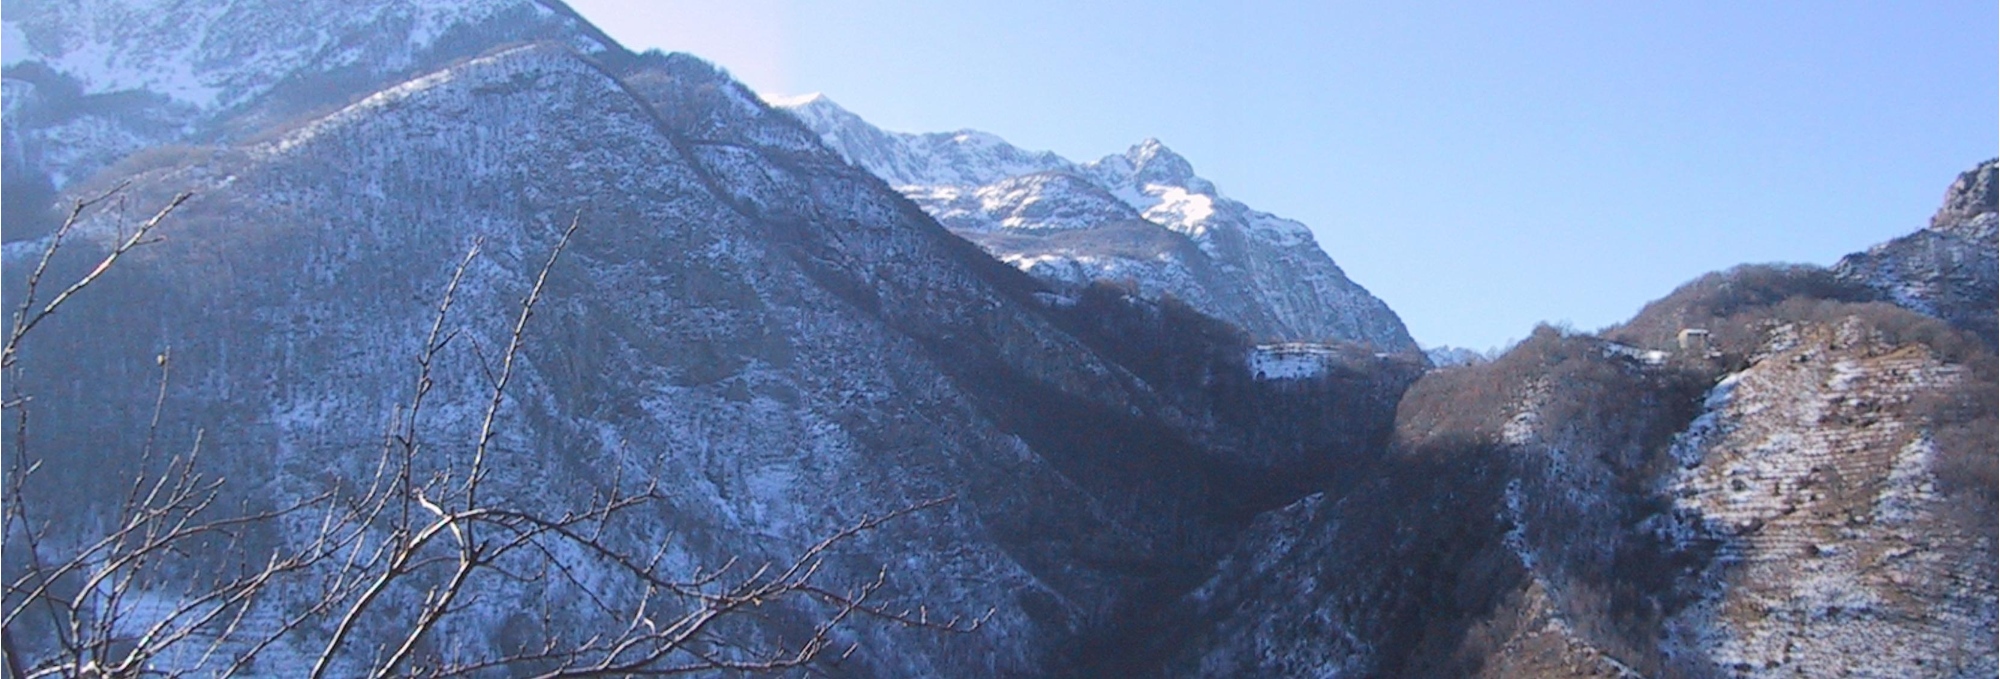 Garfagnana, the Apuan Alps